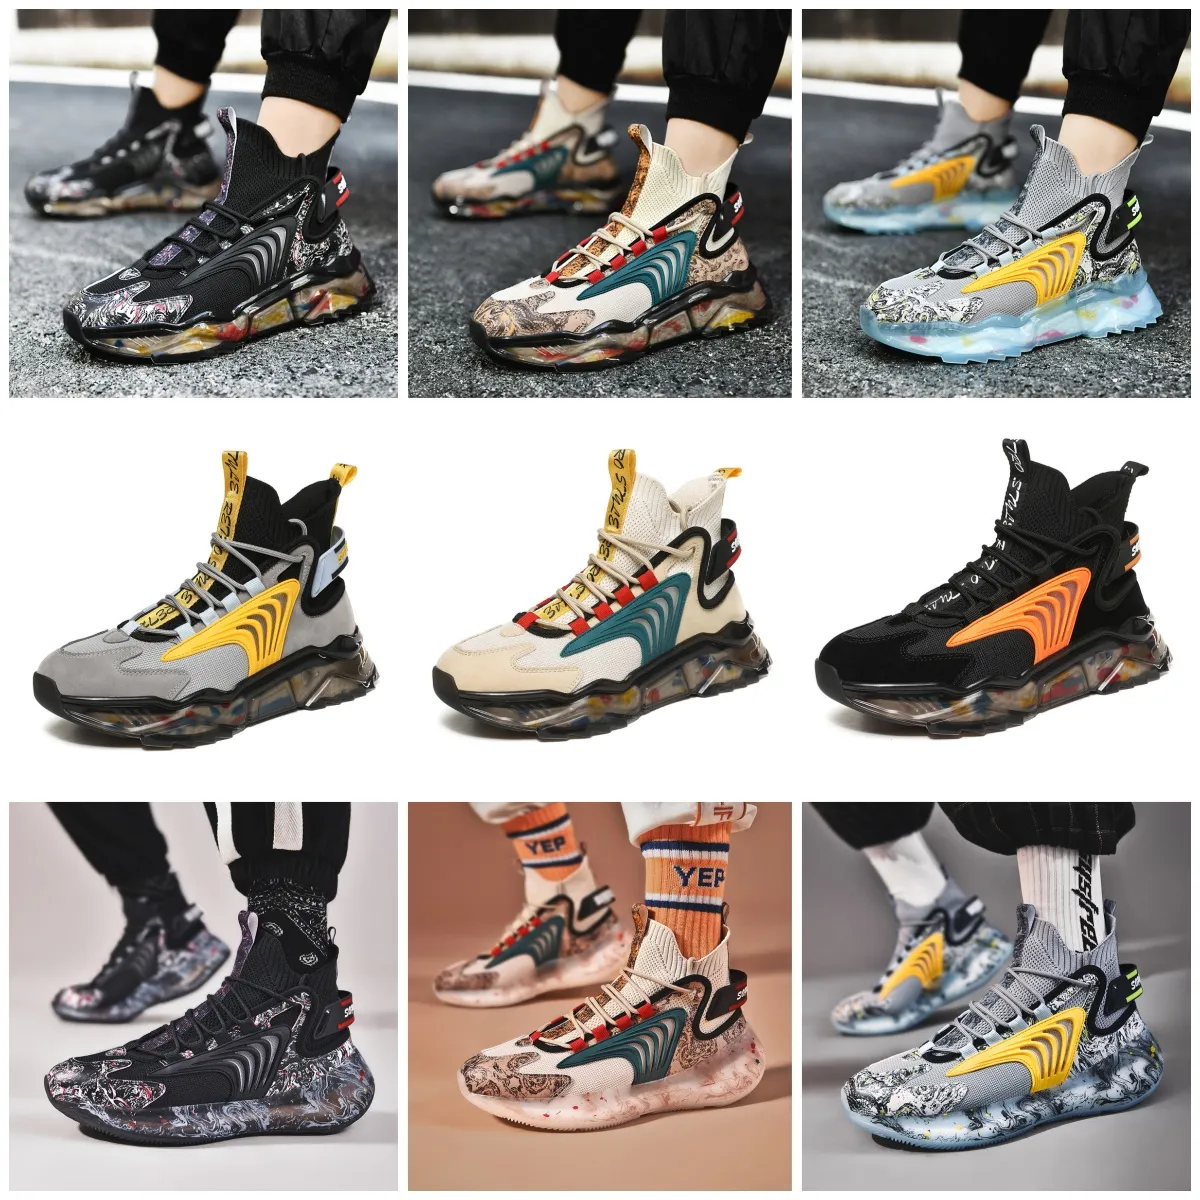 Chaussures de sport GAI Outdoors Man Shoes Nouvelles chaussures de sport de randonnée antidérapantes résistantes à l'usure chaussures d'entraînement de randonnée de haute qualité pour hommes Sneaker confort doux